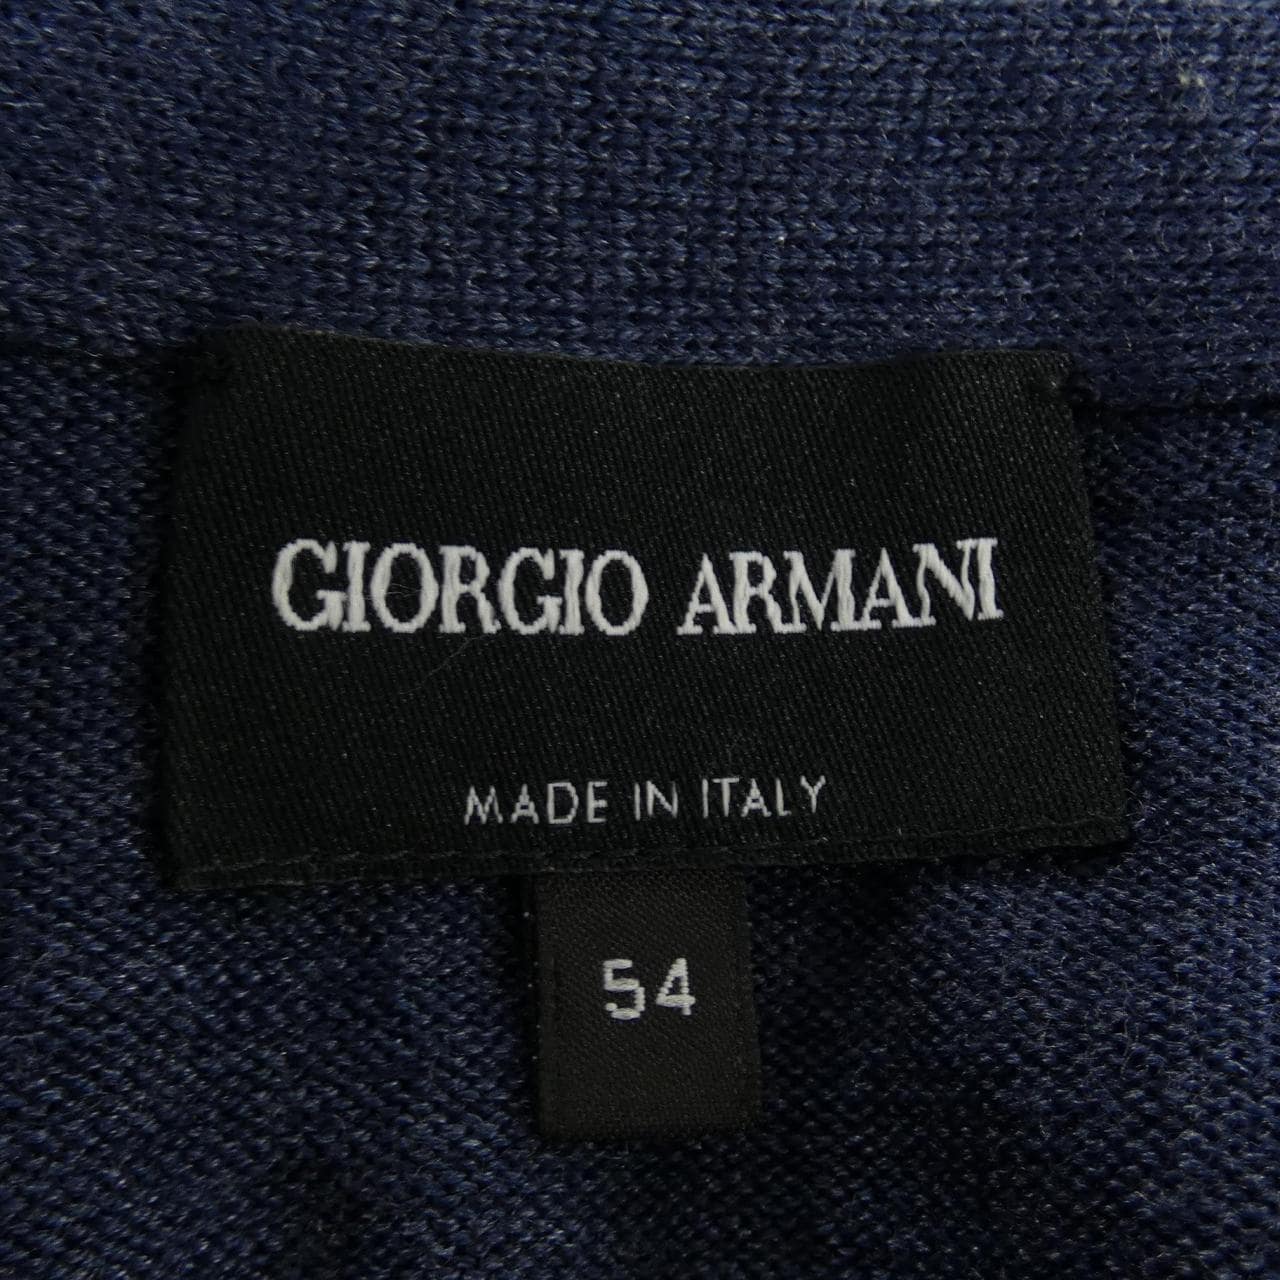 Giorgio Armani GIORGIO ARMANI开襟衫